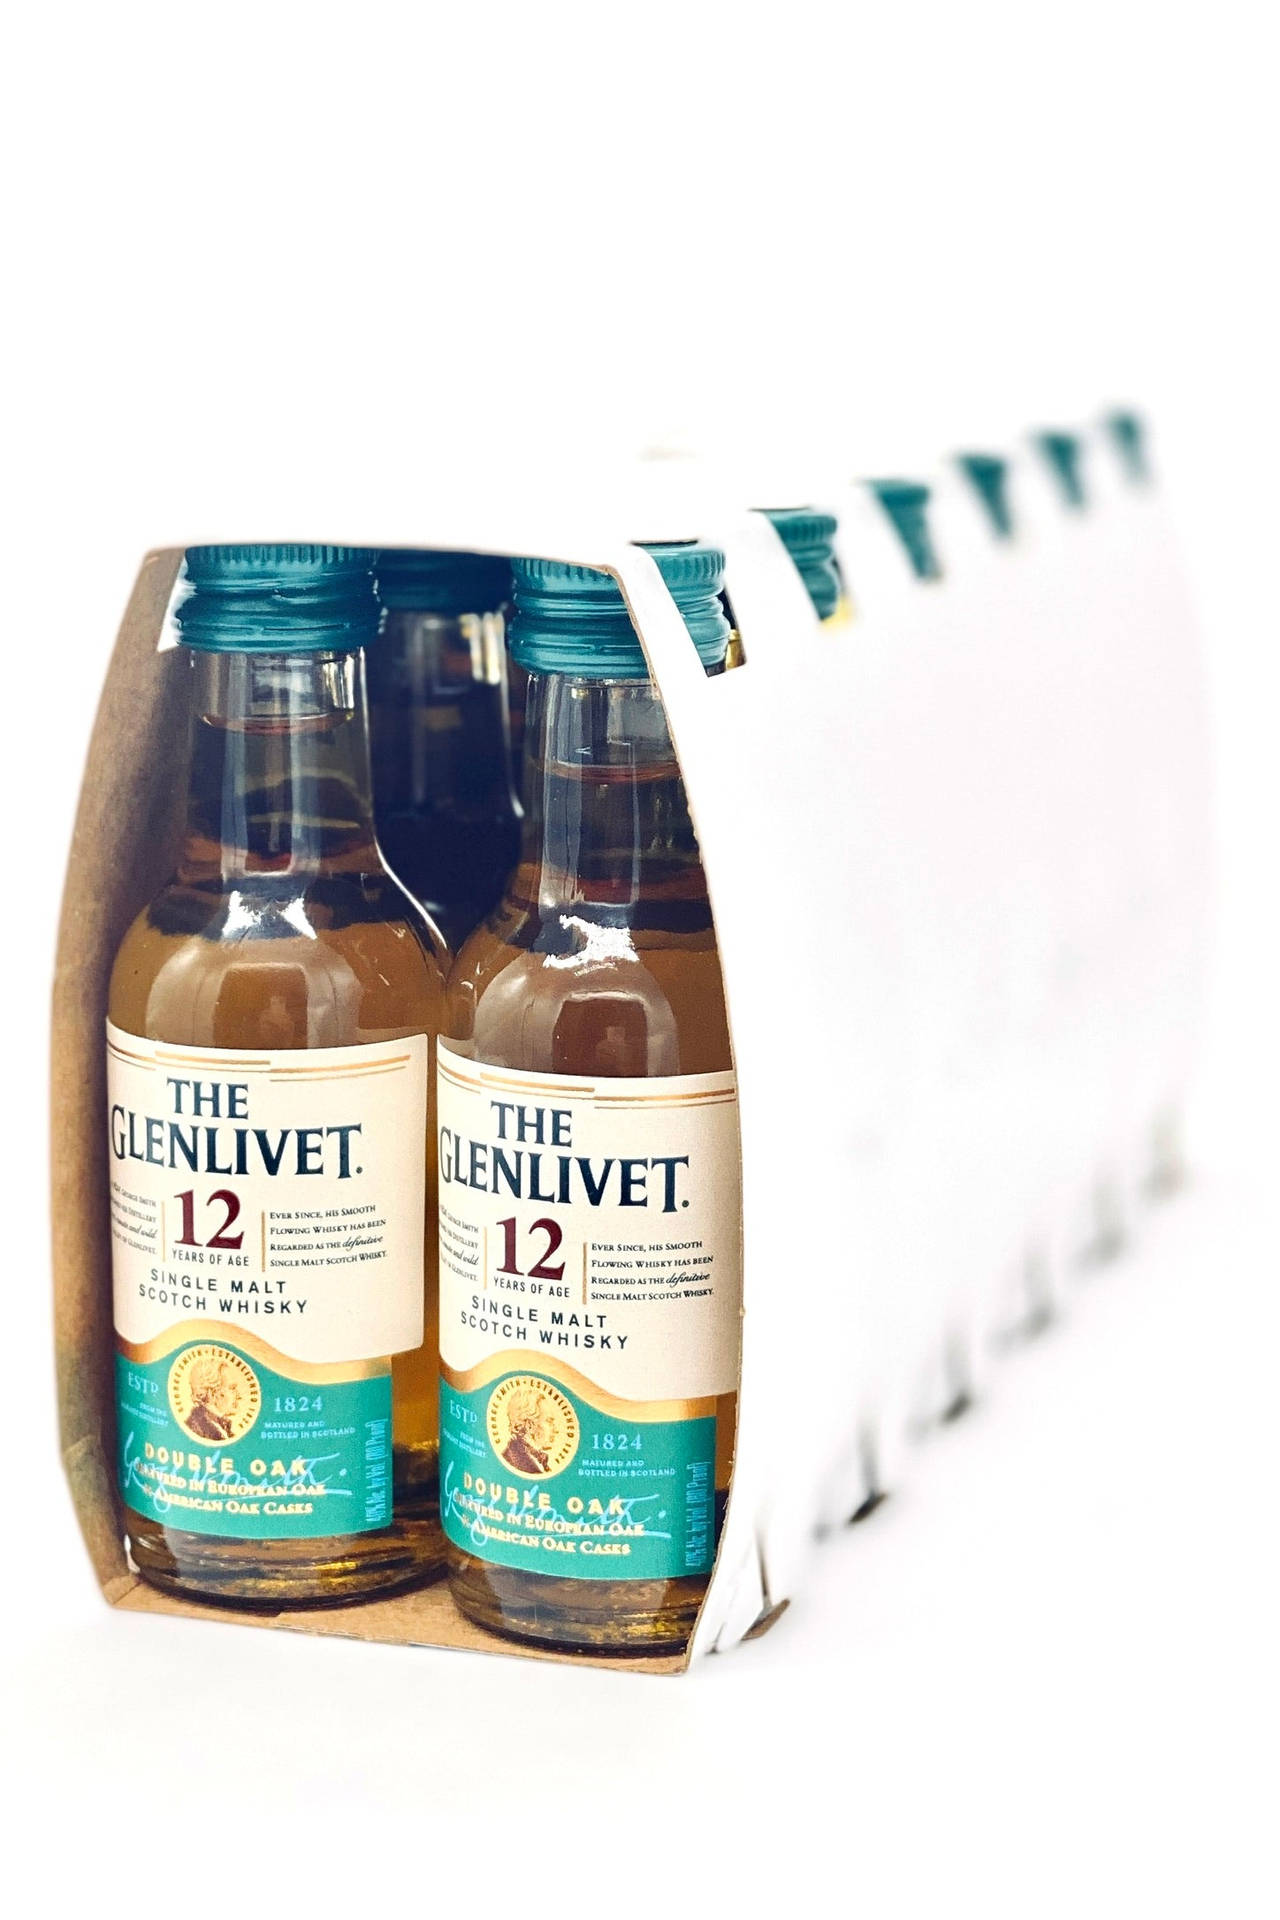 The Glenlivet 50ml Mini Bottles Wallpaper